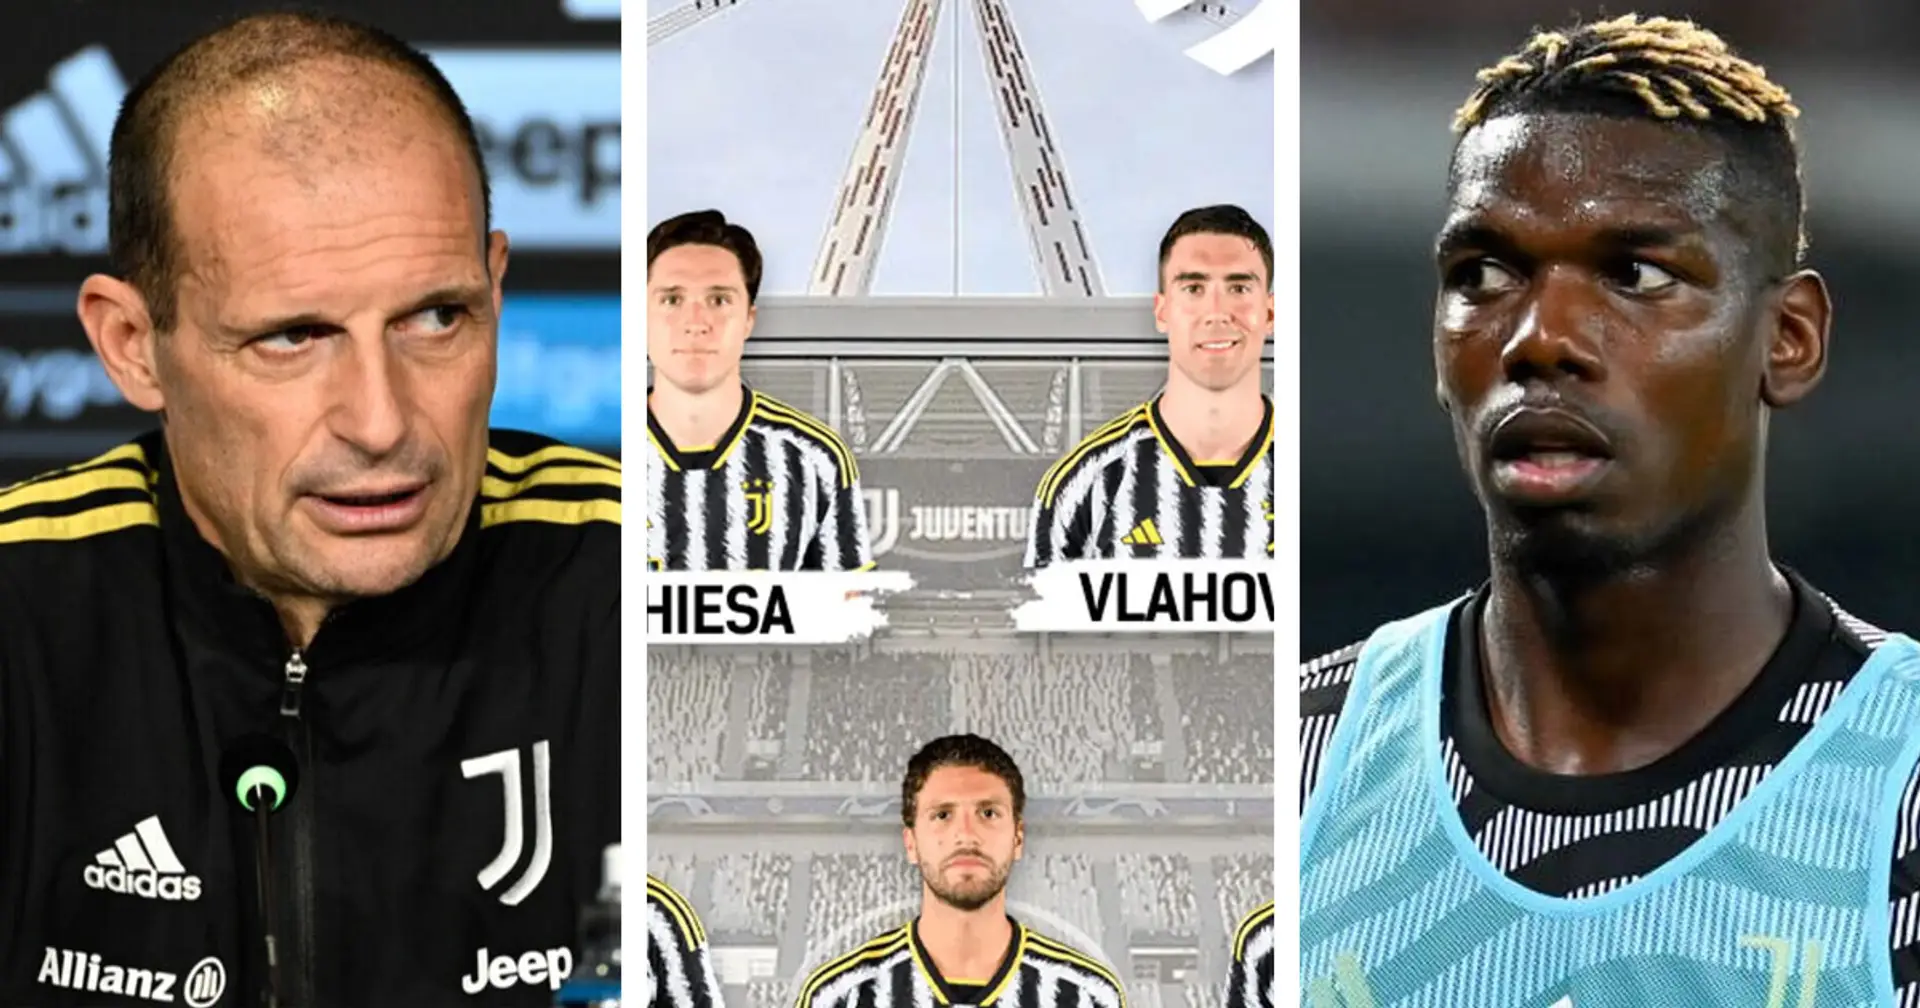 Le probabili formazioni di Juventus-Lazio e altre 3 storie sui Bianconeri che potresti esserti perso